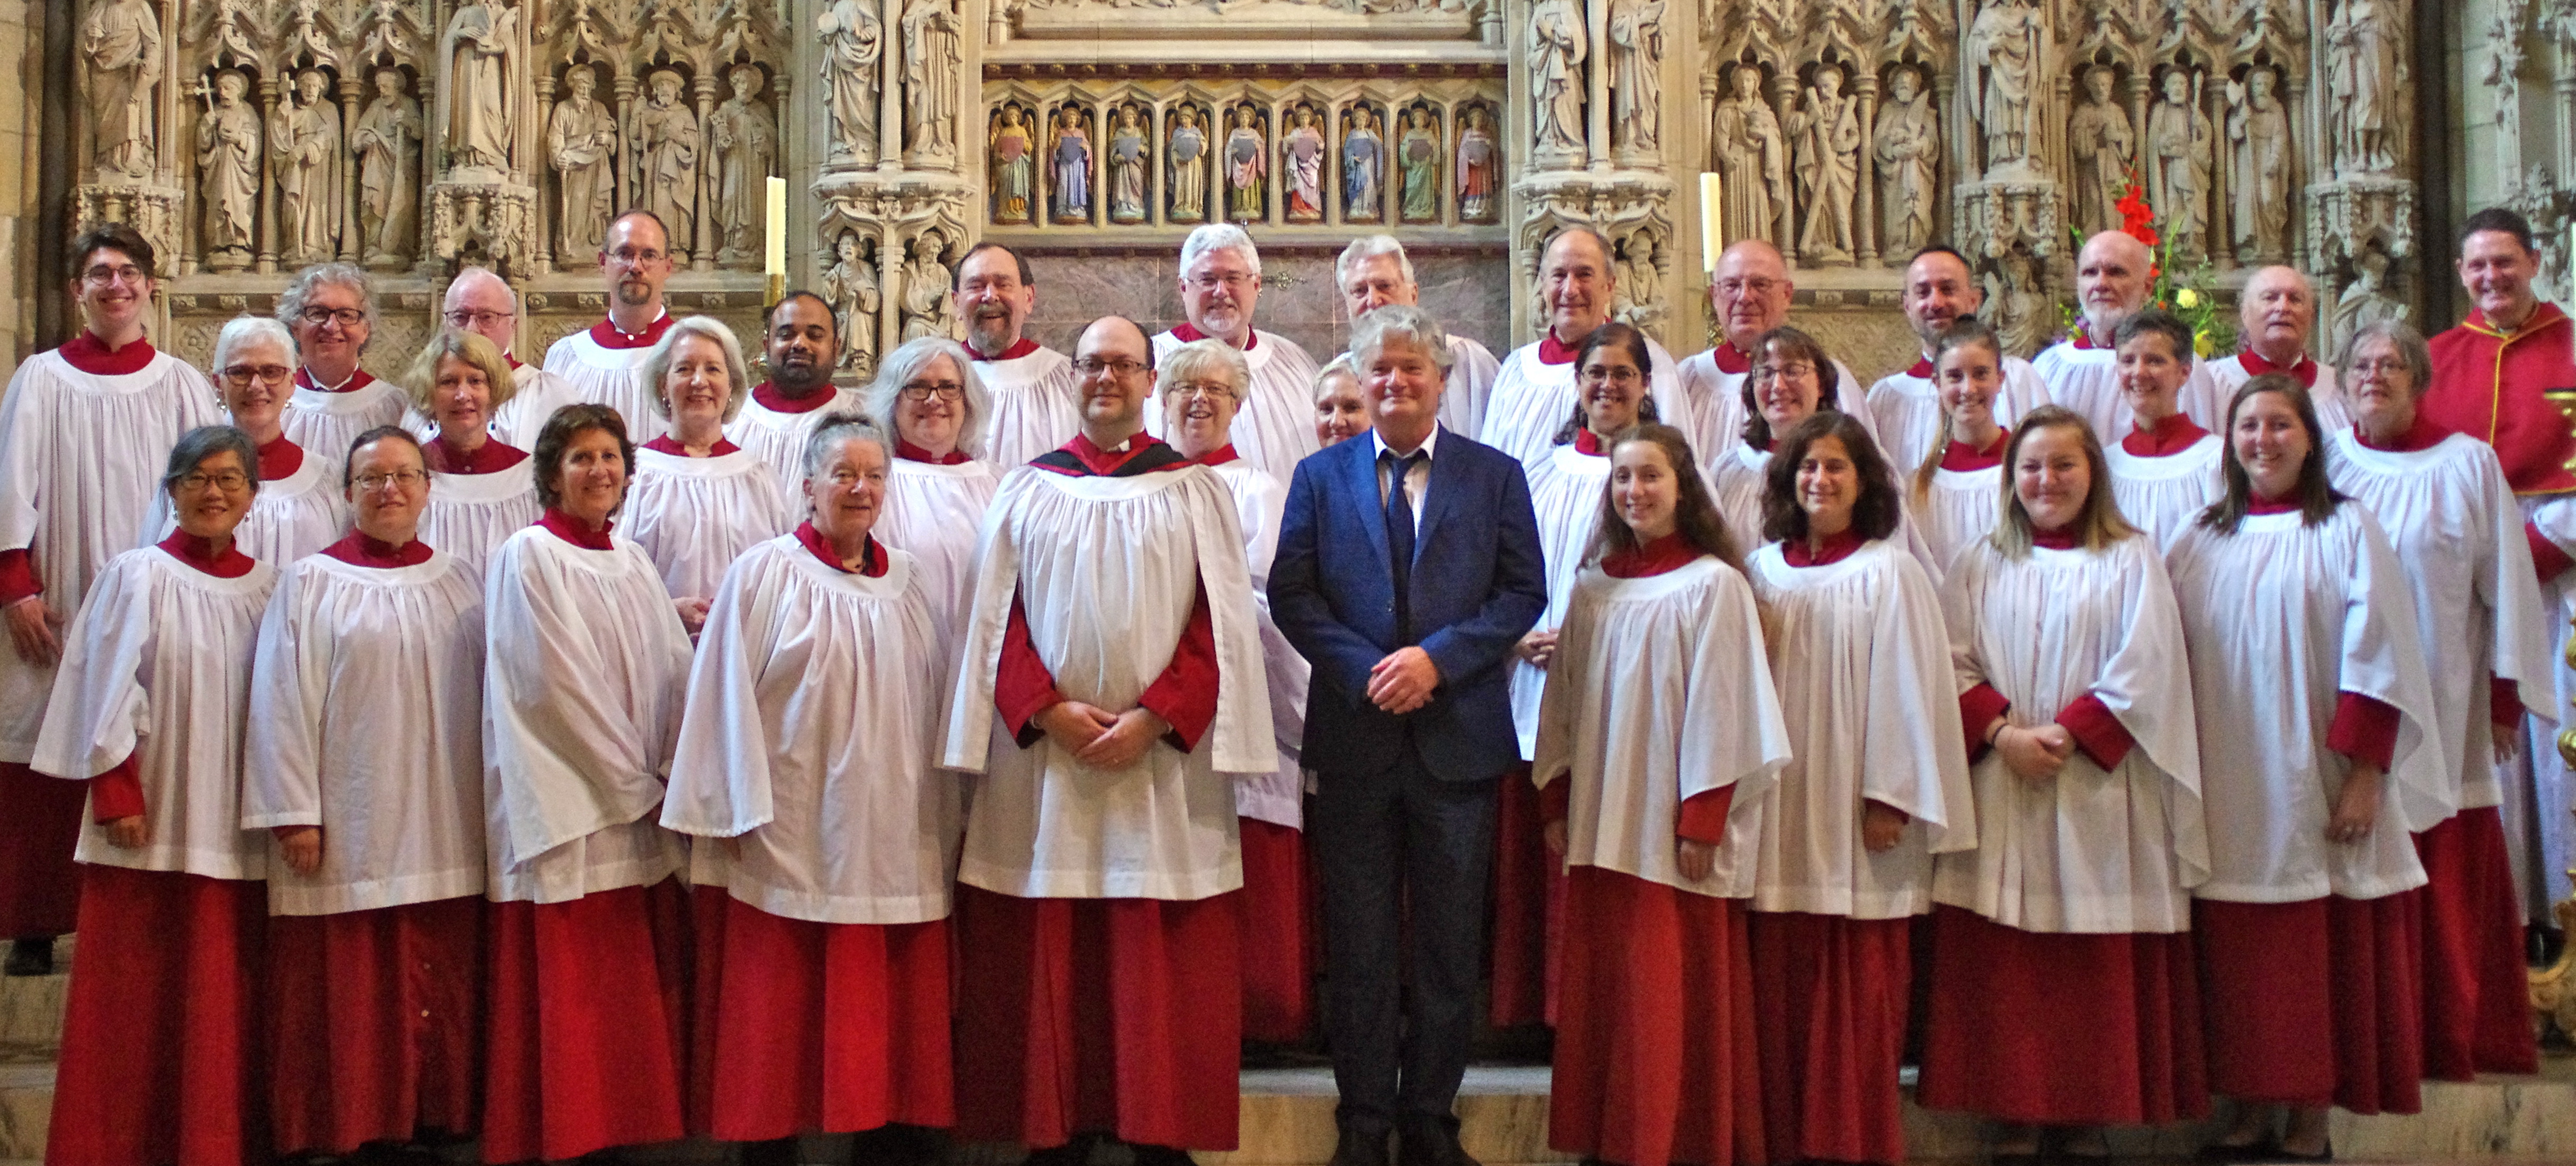 ACO choir in Truro 2018